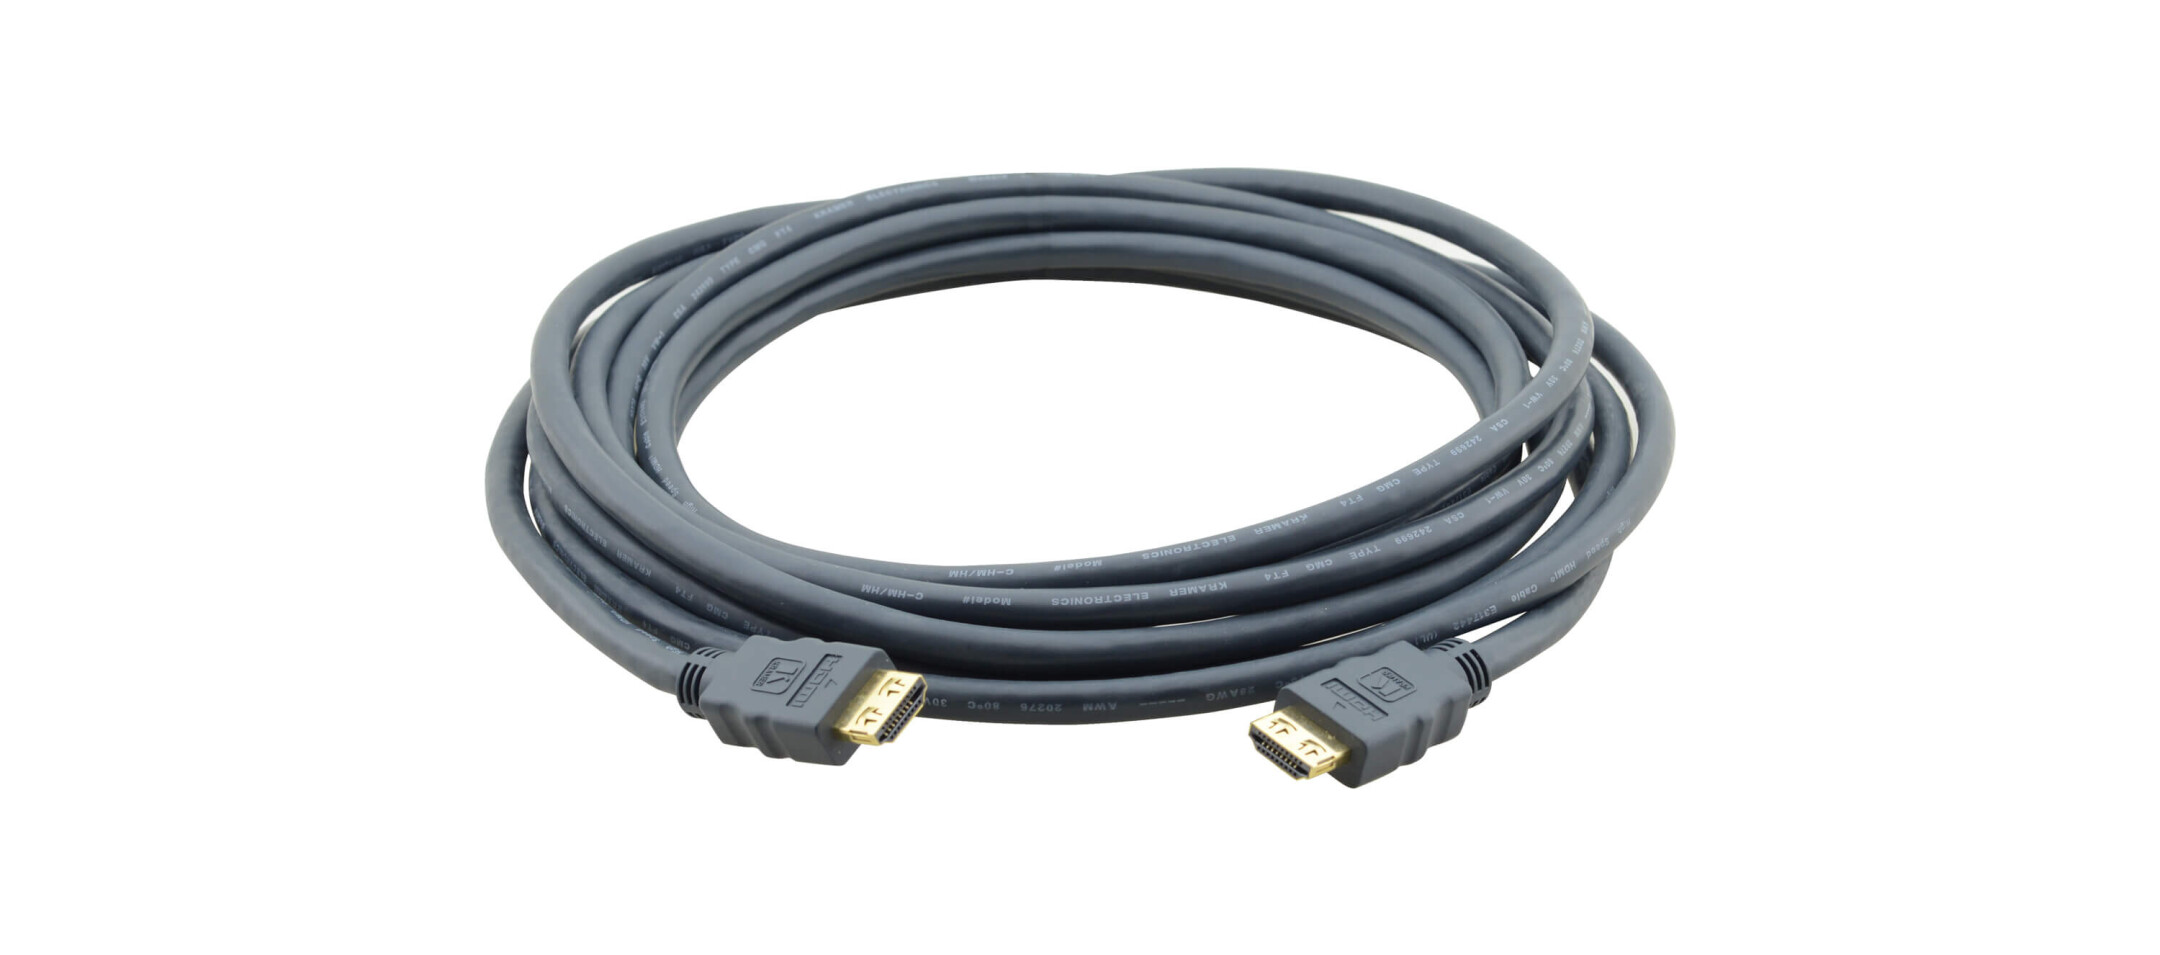 Kramer-CLS-HM-HM-ETH-6-HDMI-Kabel-mit-Ethernet-raucharm-und-halogenfrei-Stecker-Stecker-1-8-m